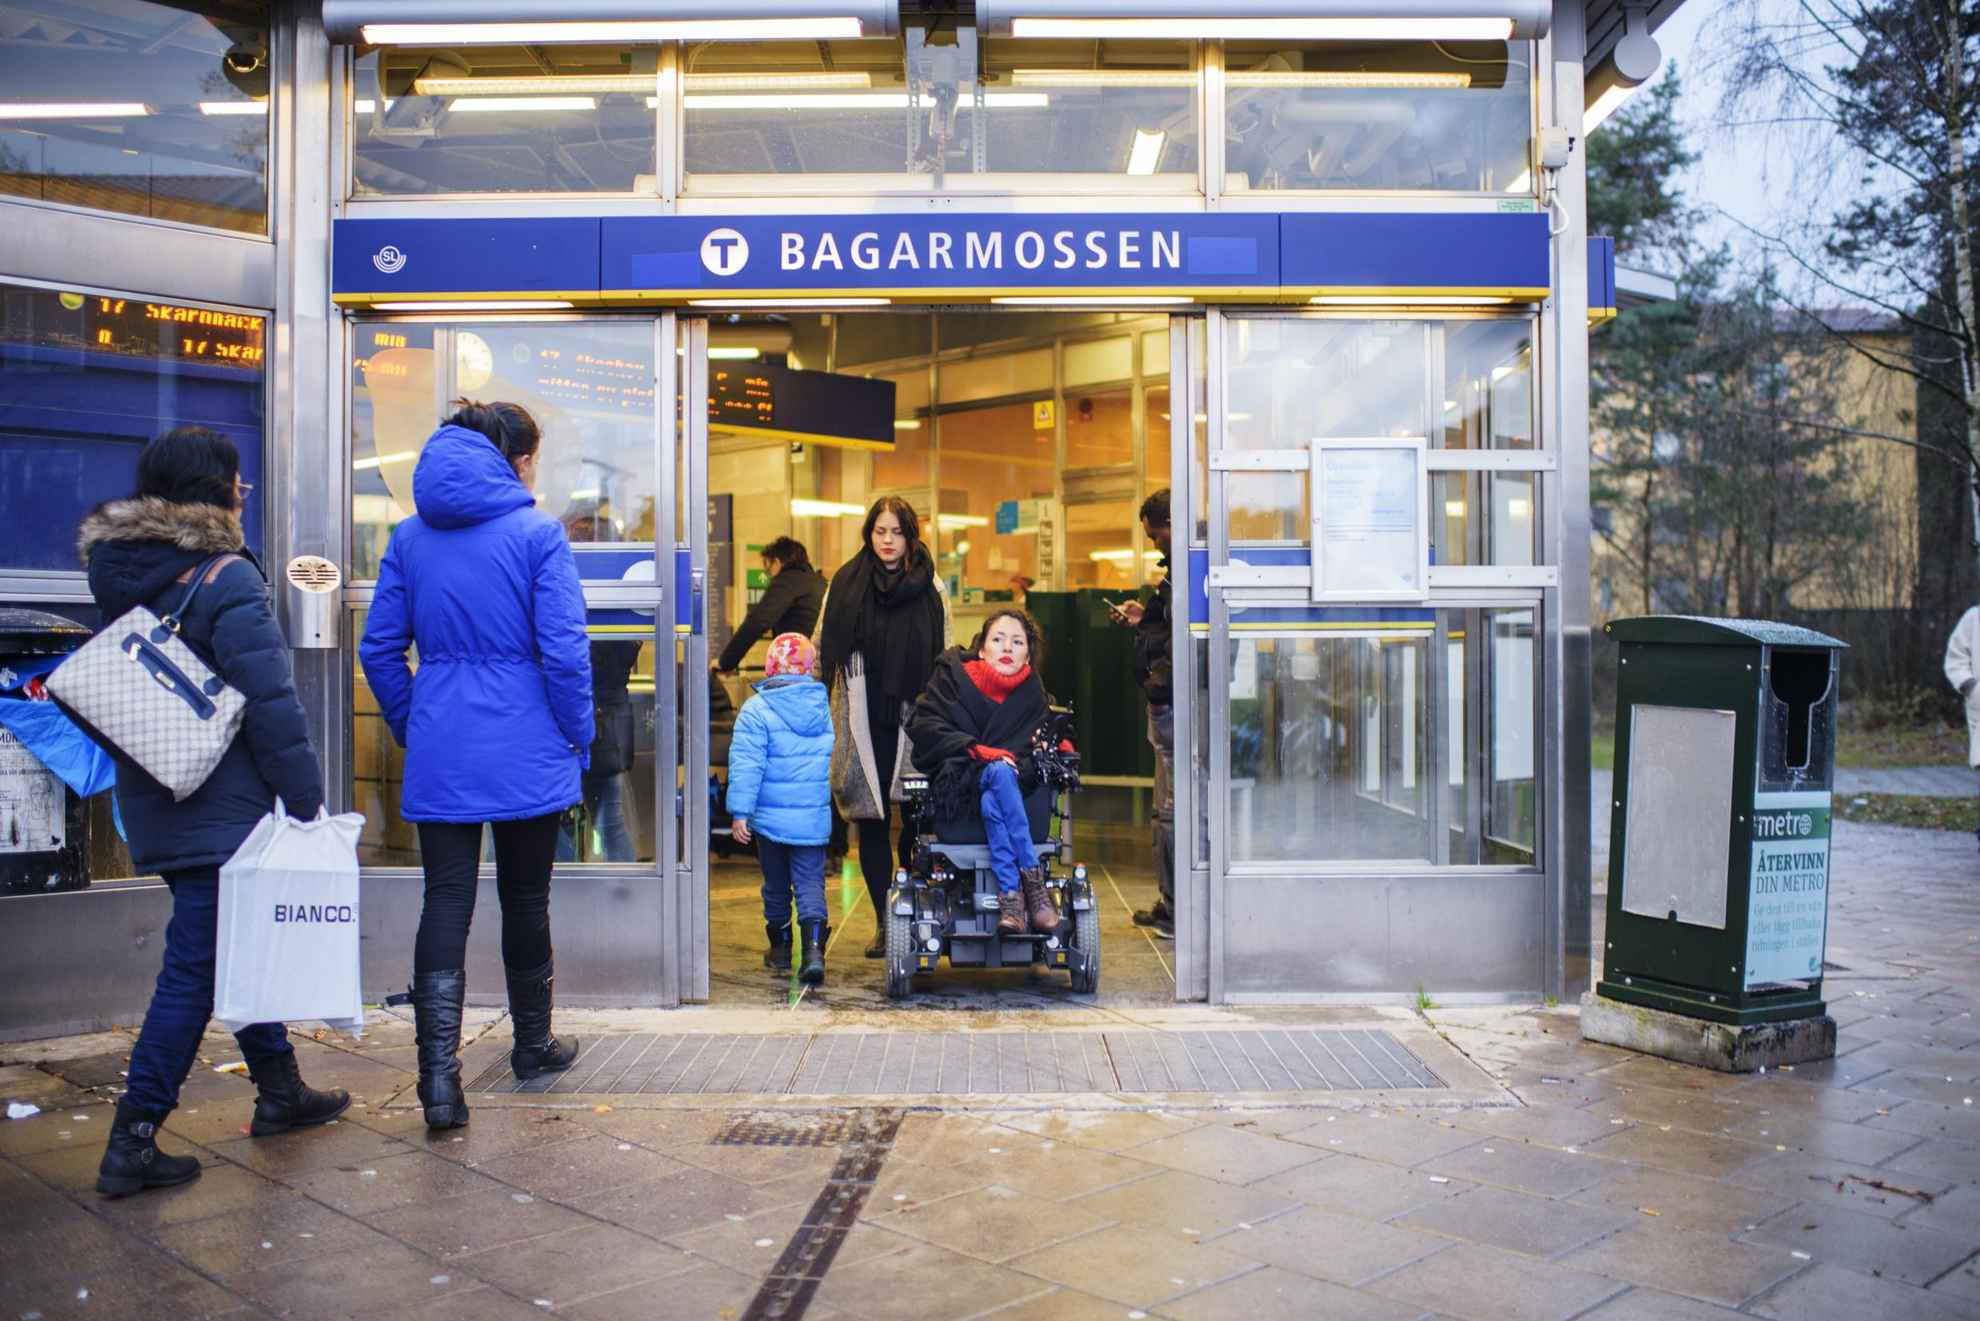 Stockholm public transport